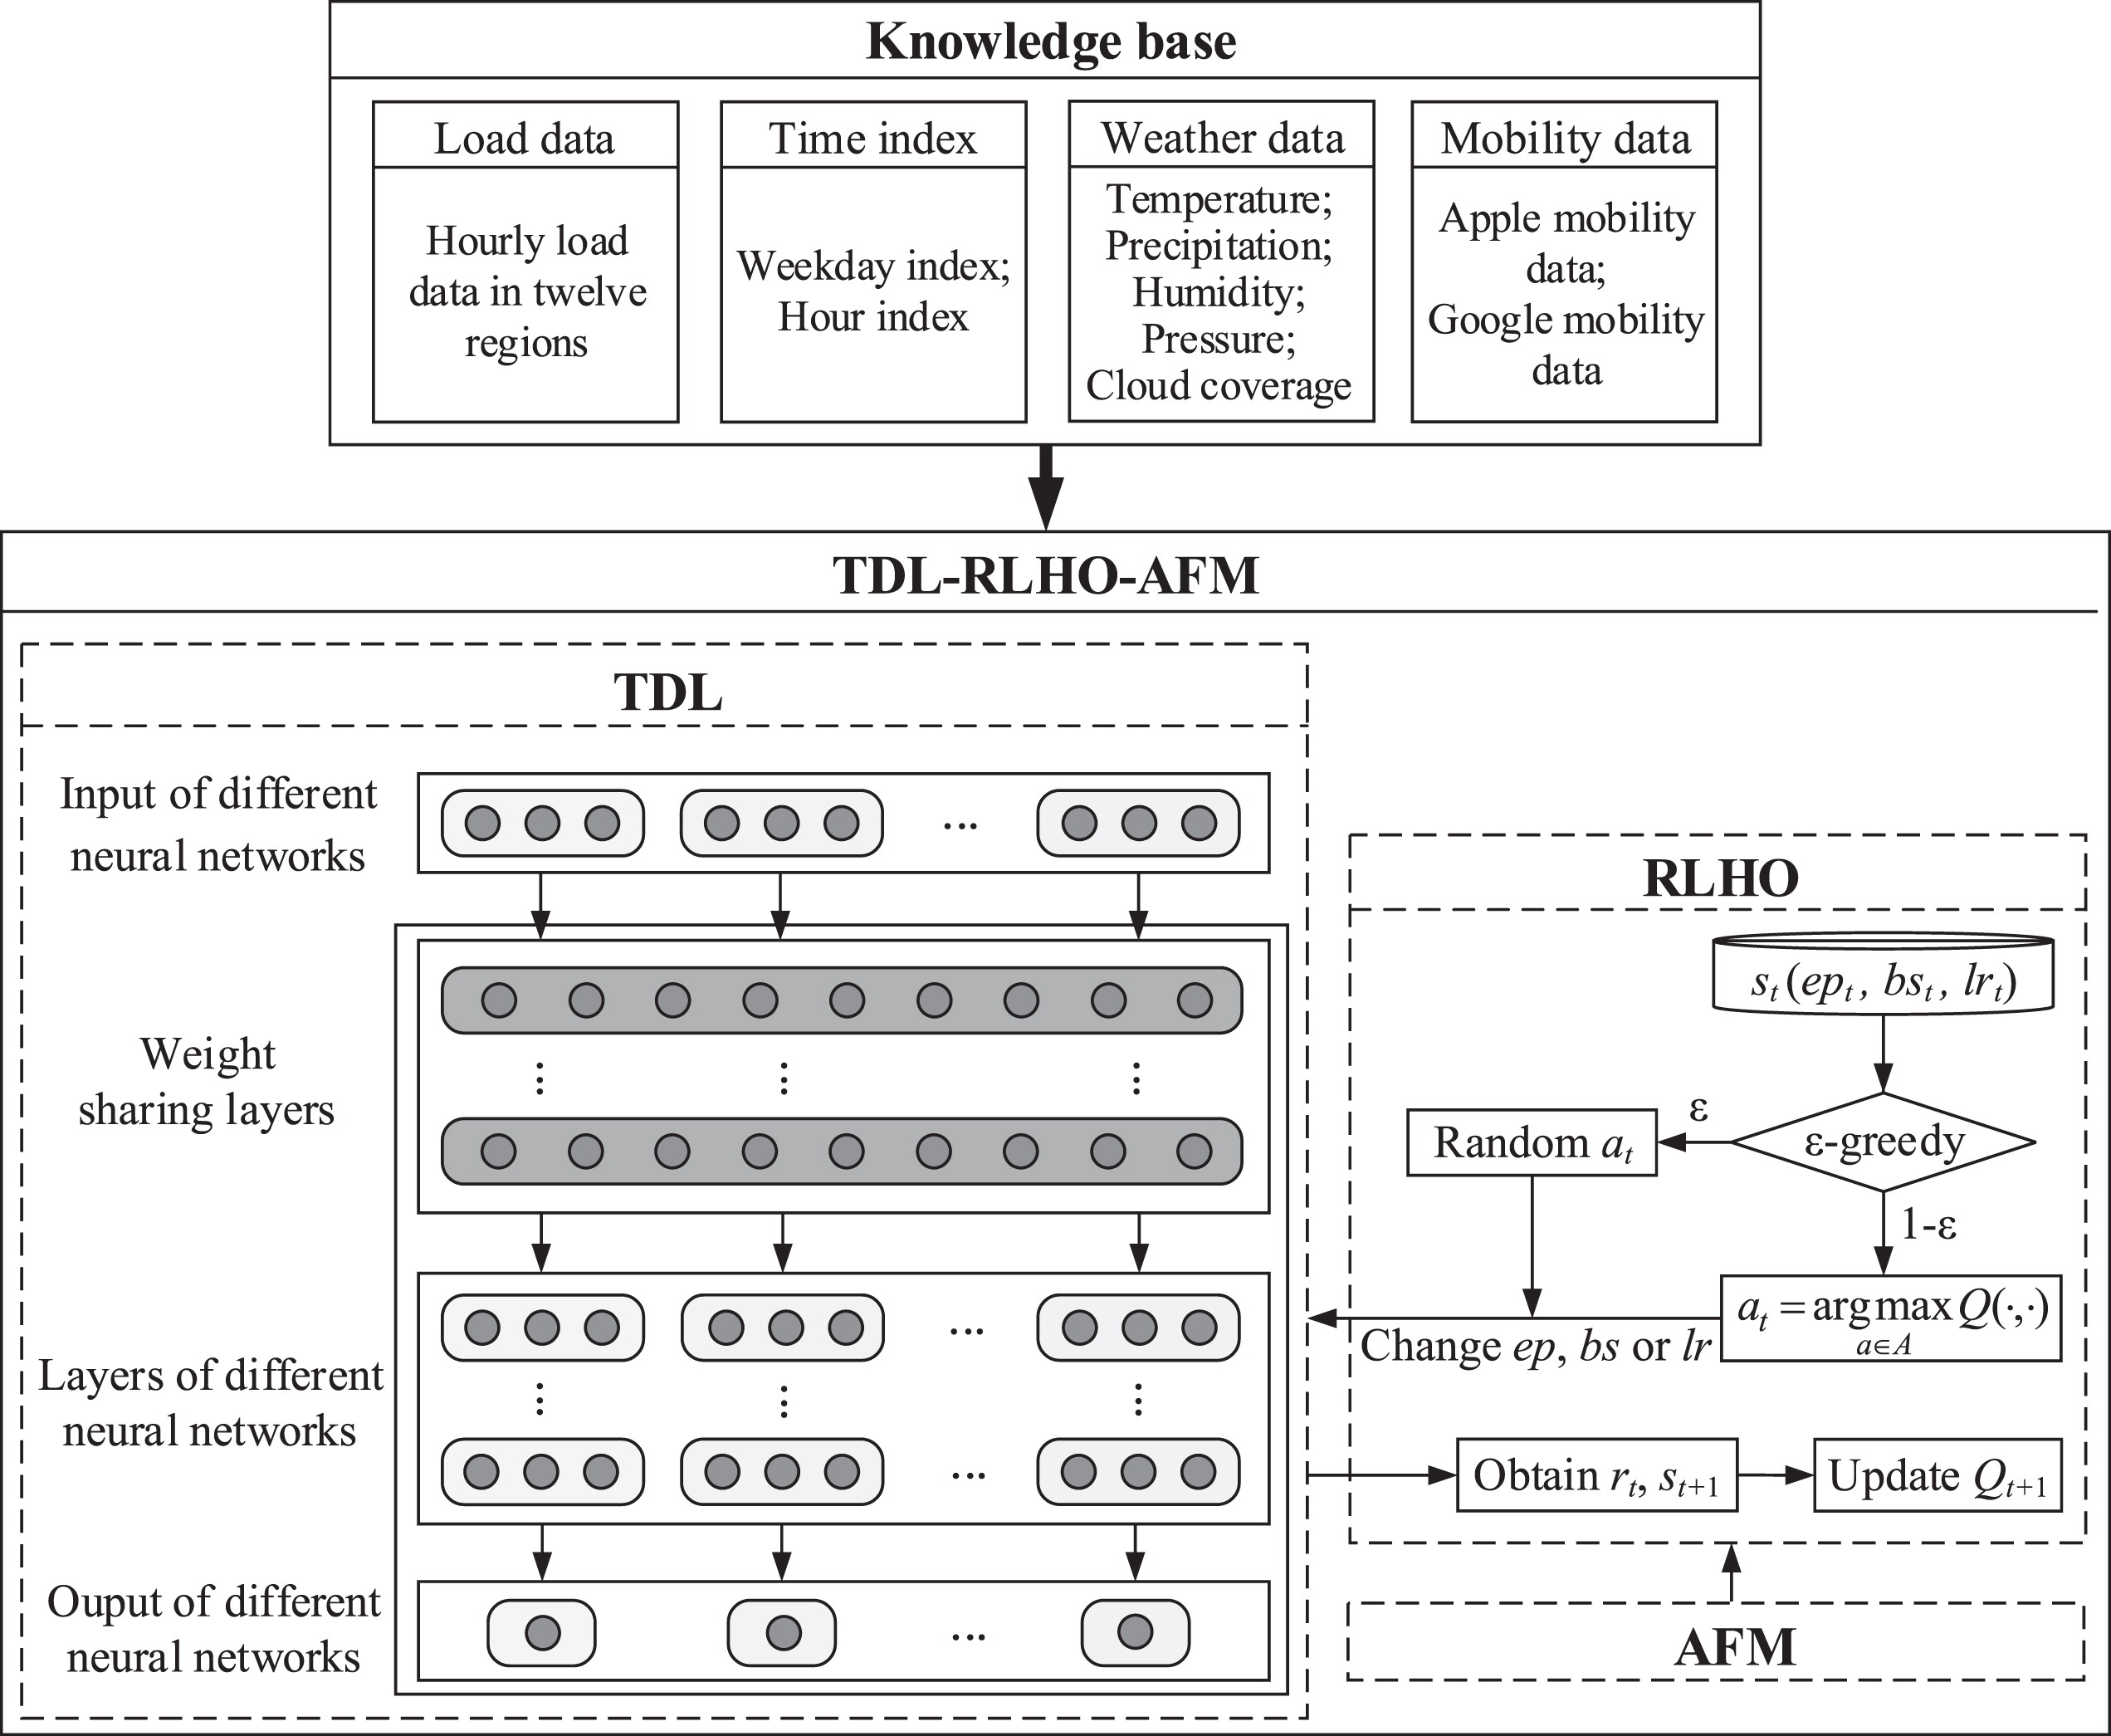 Overview of TDL-RLHO-AFM